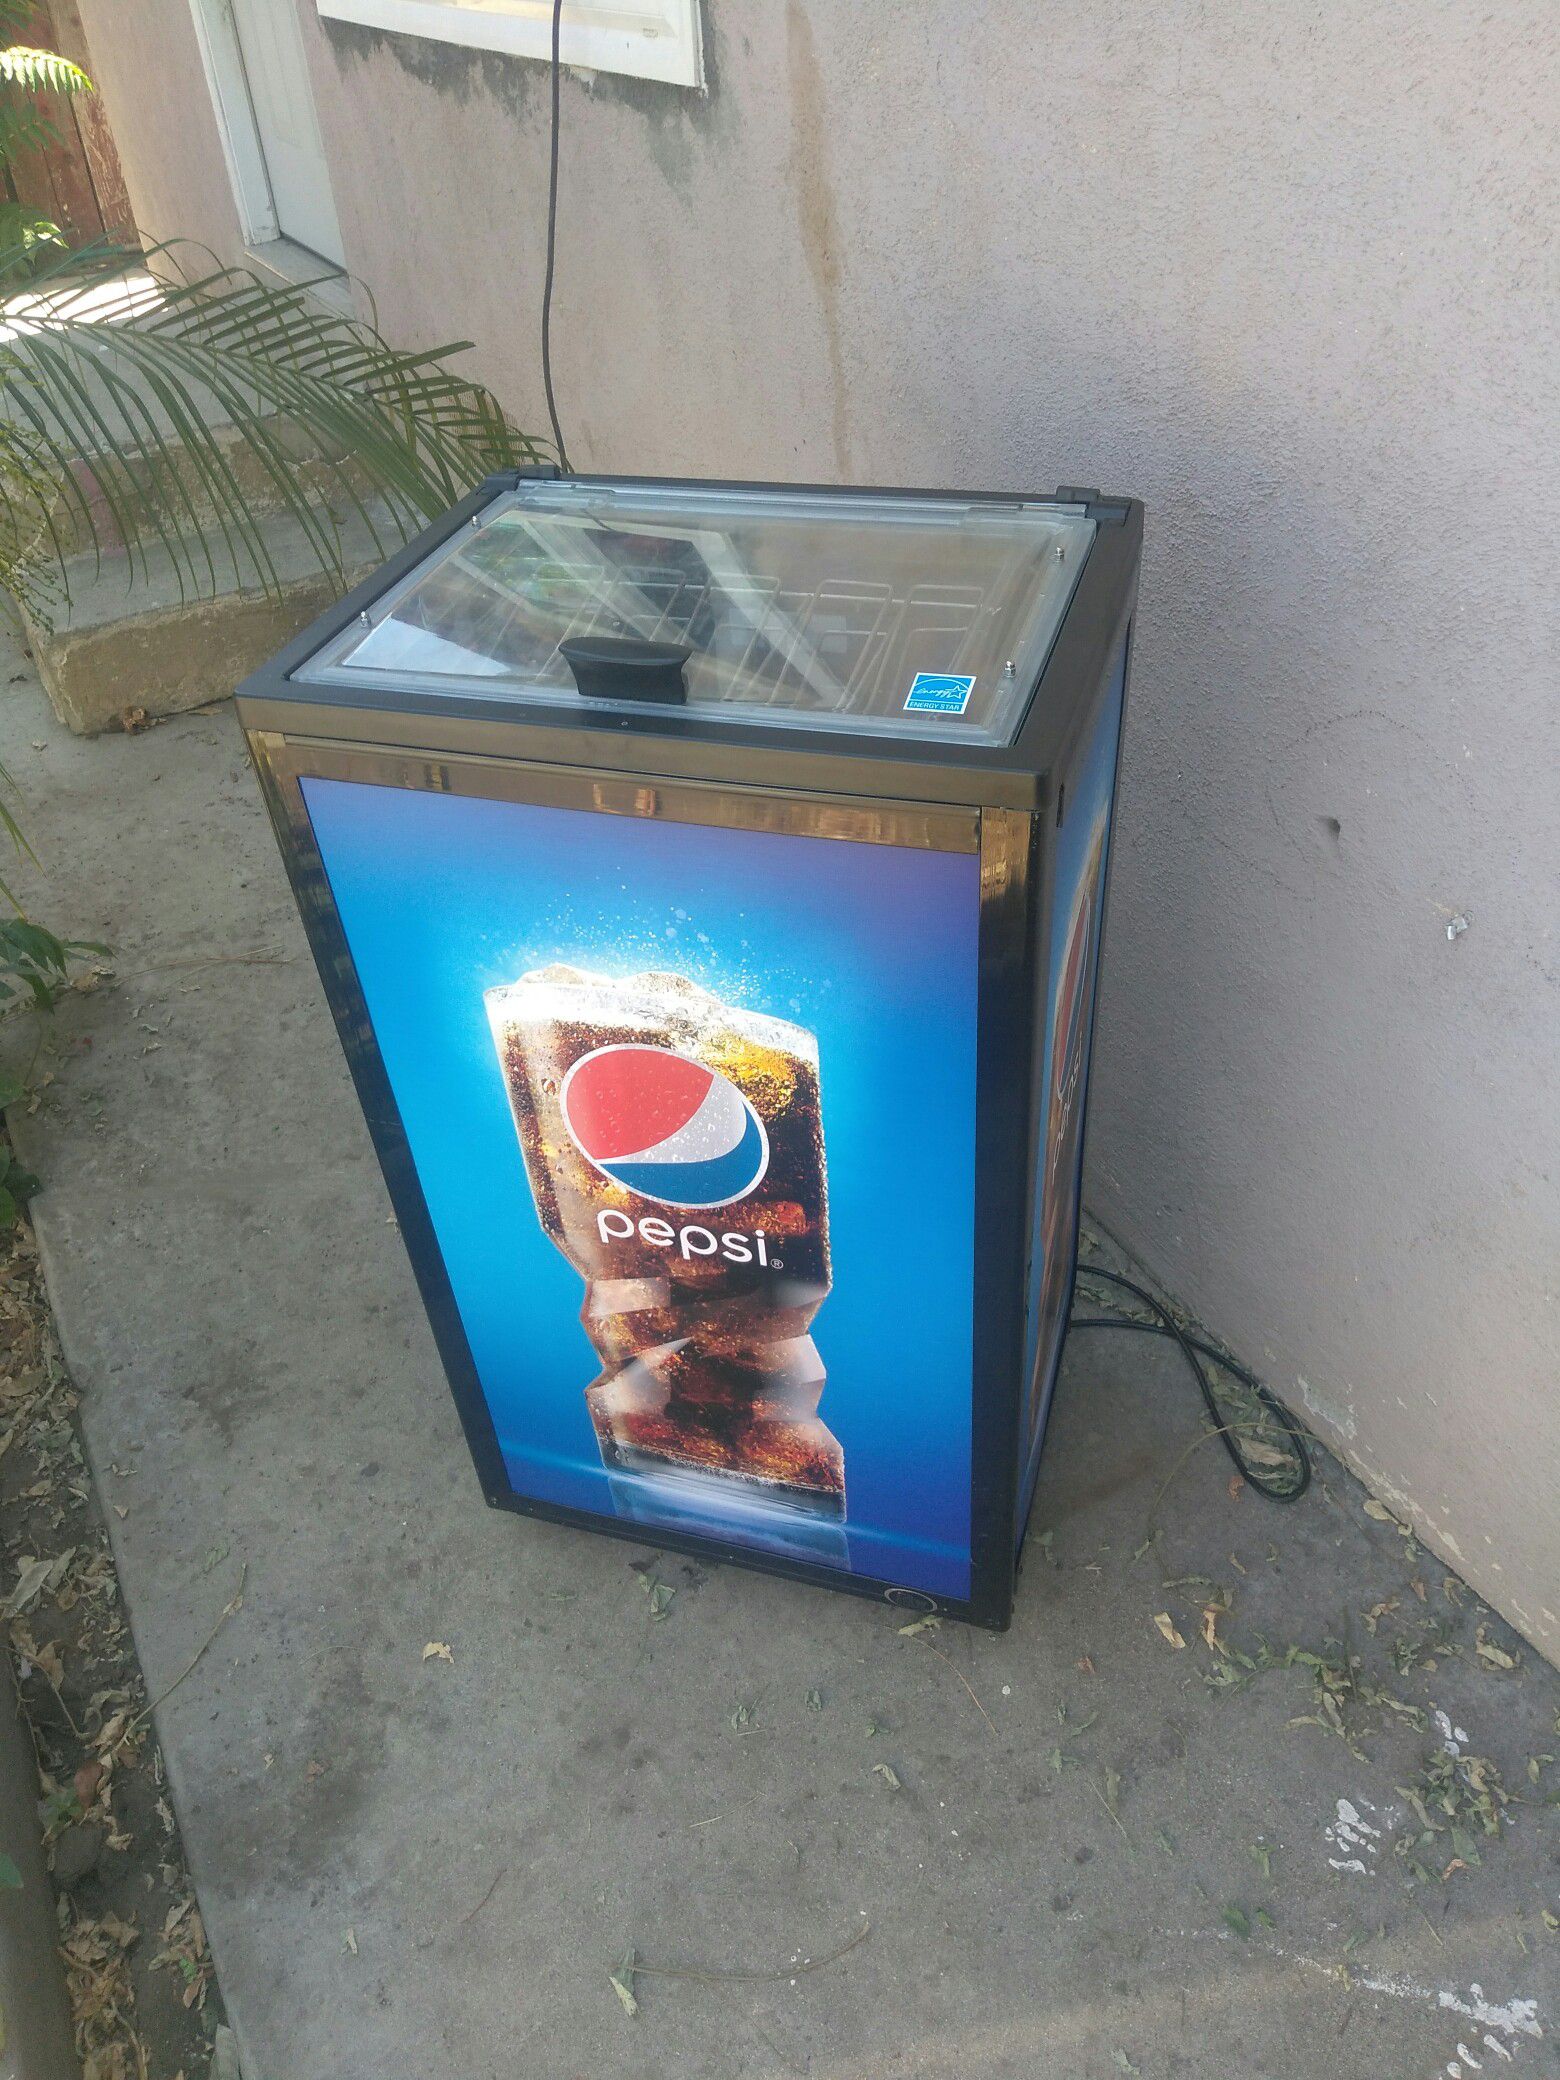 Pepsi display cooler